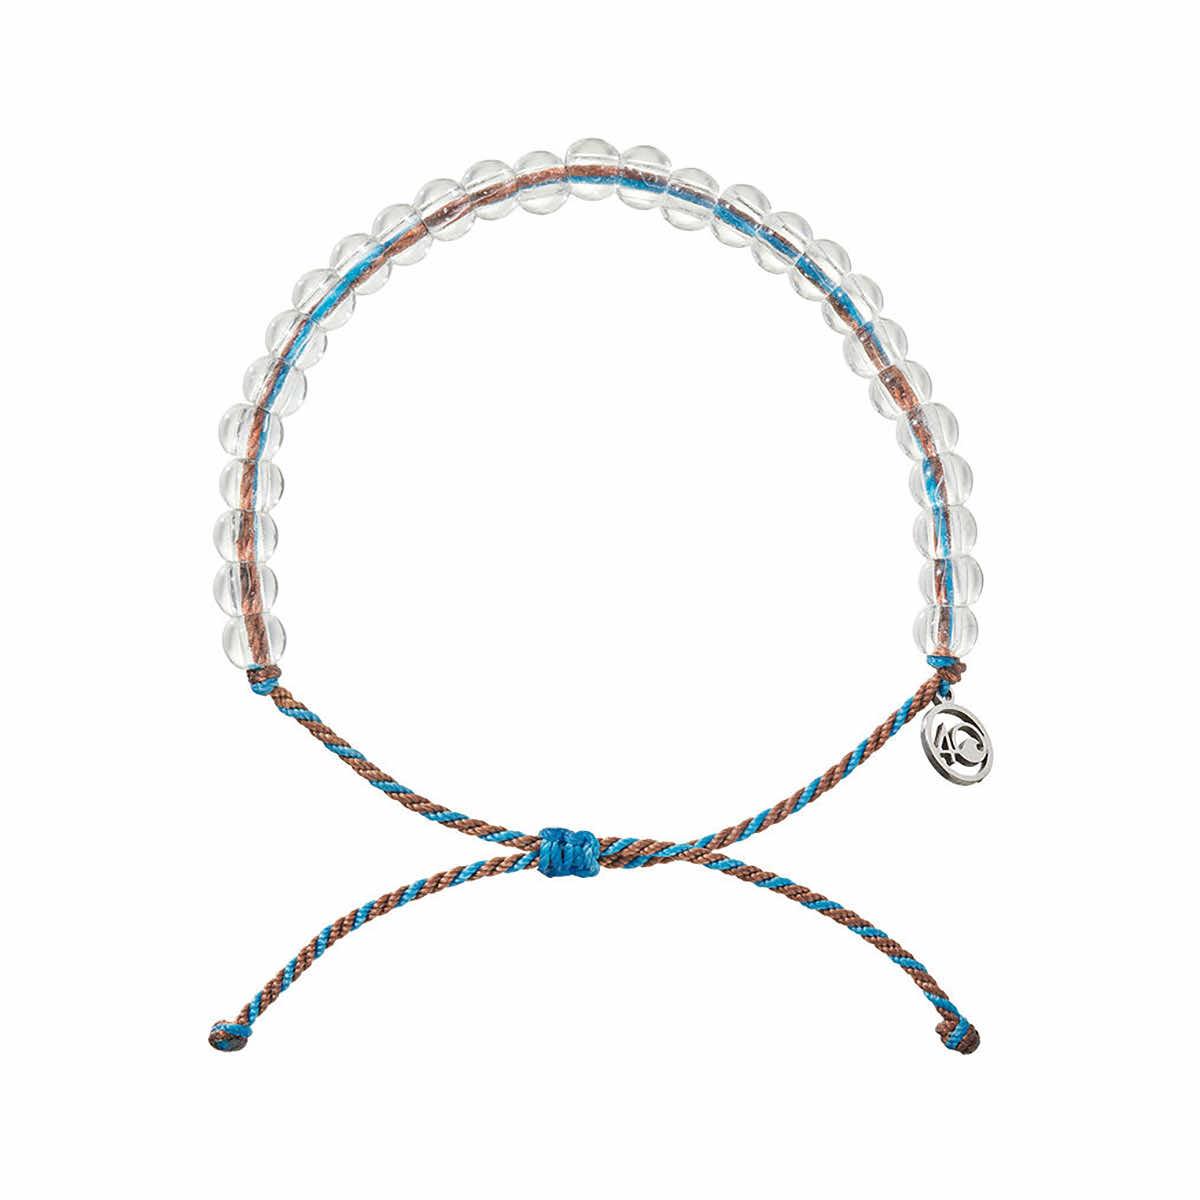  Luxe Seaside Beaded Bracelet